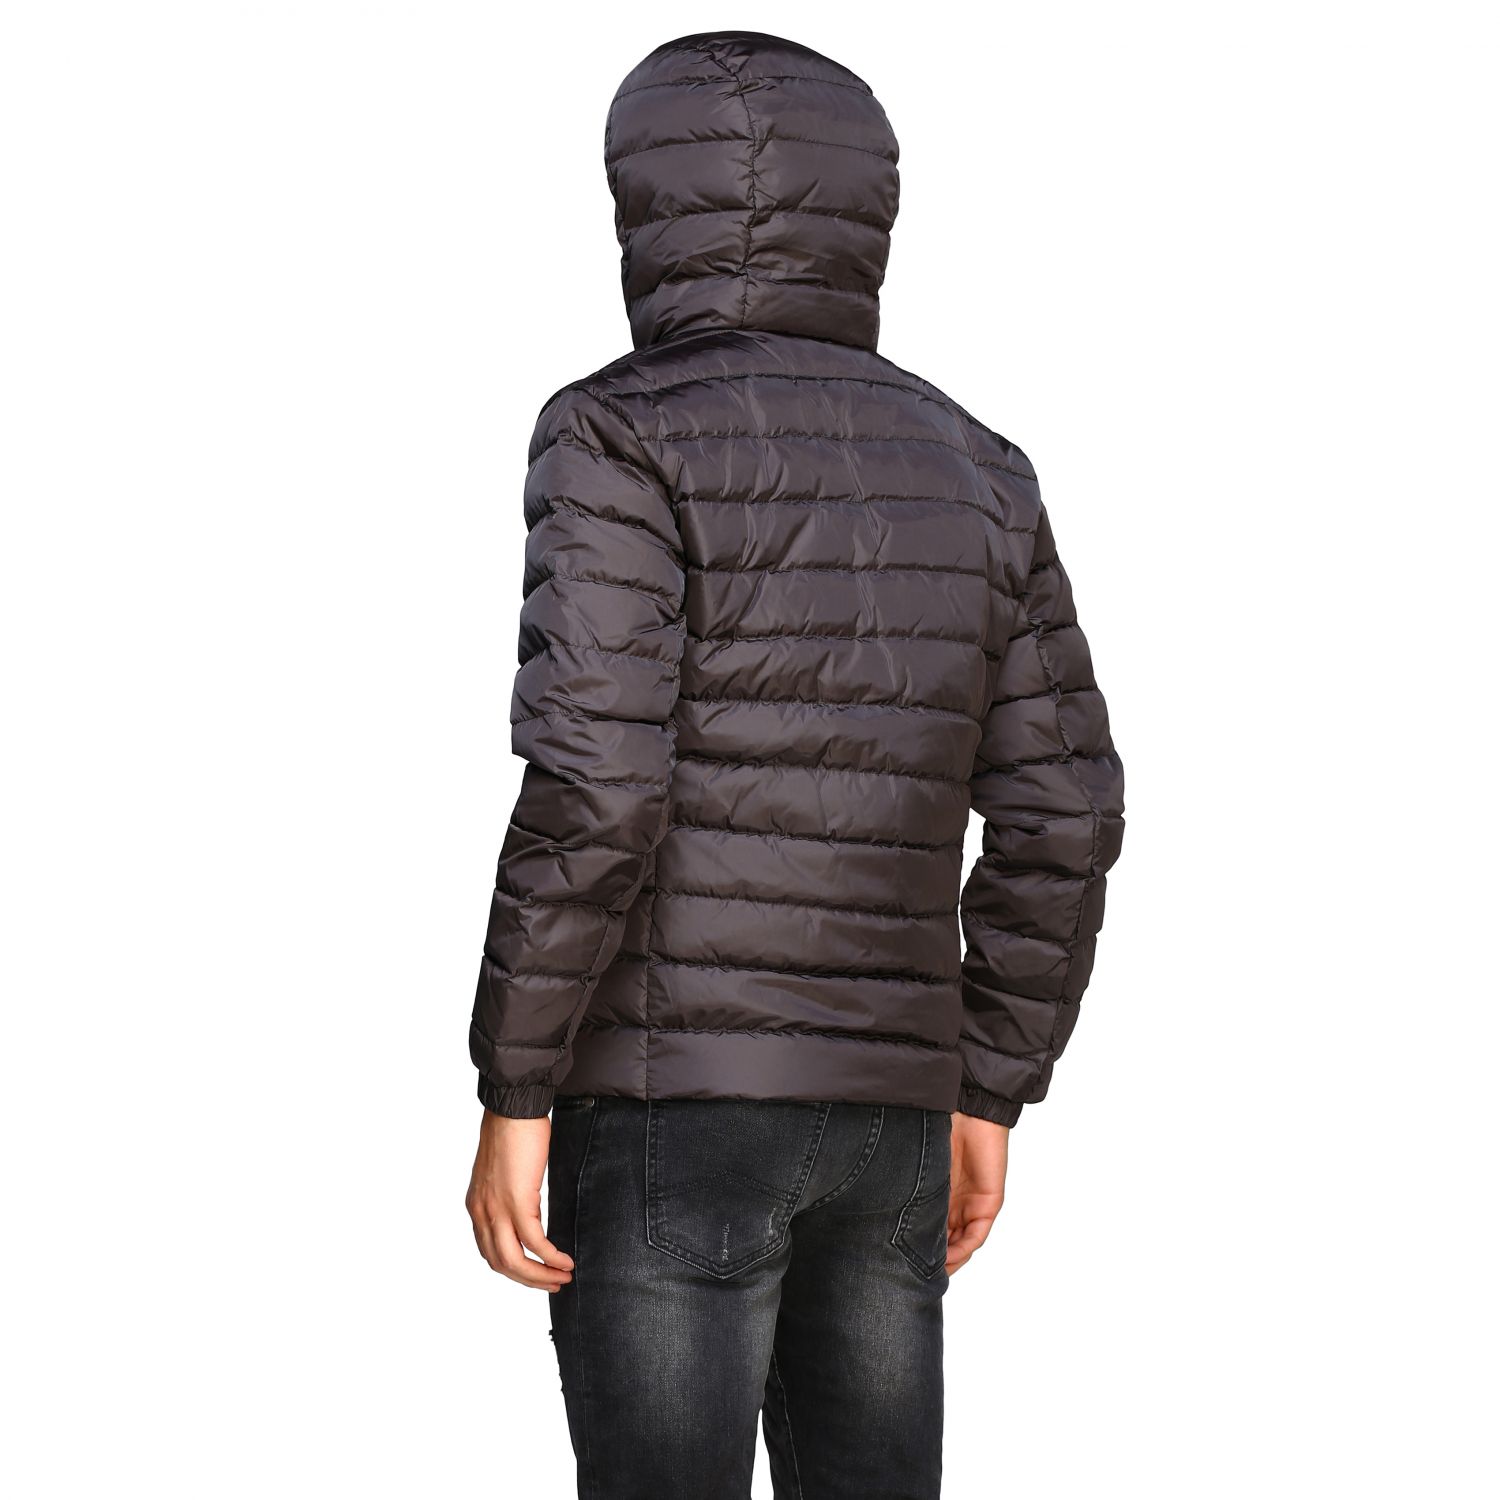 Refrigiwear Outlet: Jacket men - Charcoal | Jacket Refrigiwear G92700 ...